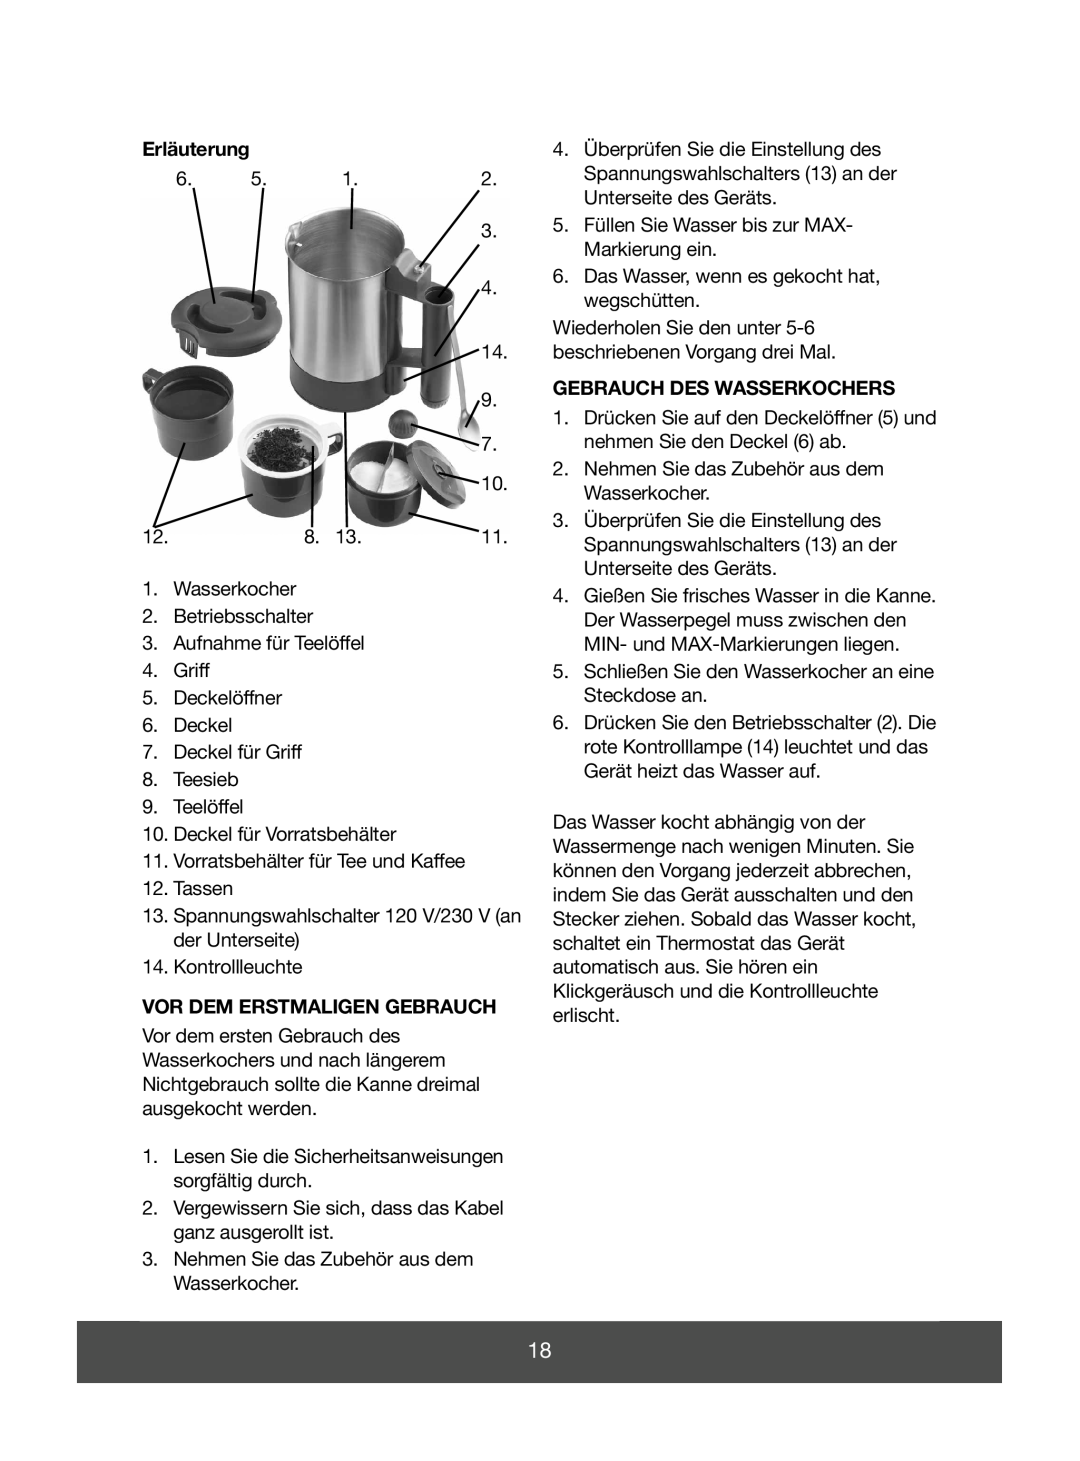 Melissa 645-074 manual Erläuterung, Gebrauch Des Wasserkochers, Vor Dem Erstmaligen Gebrauch 